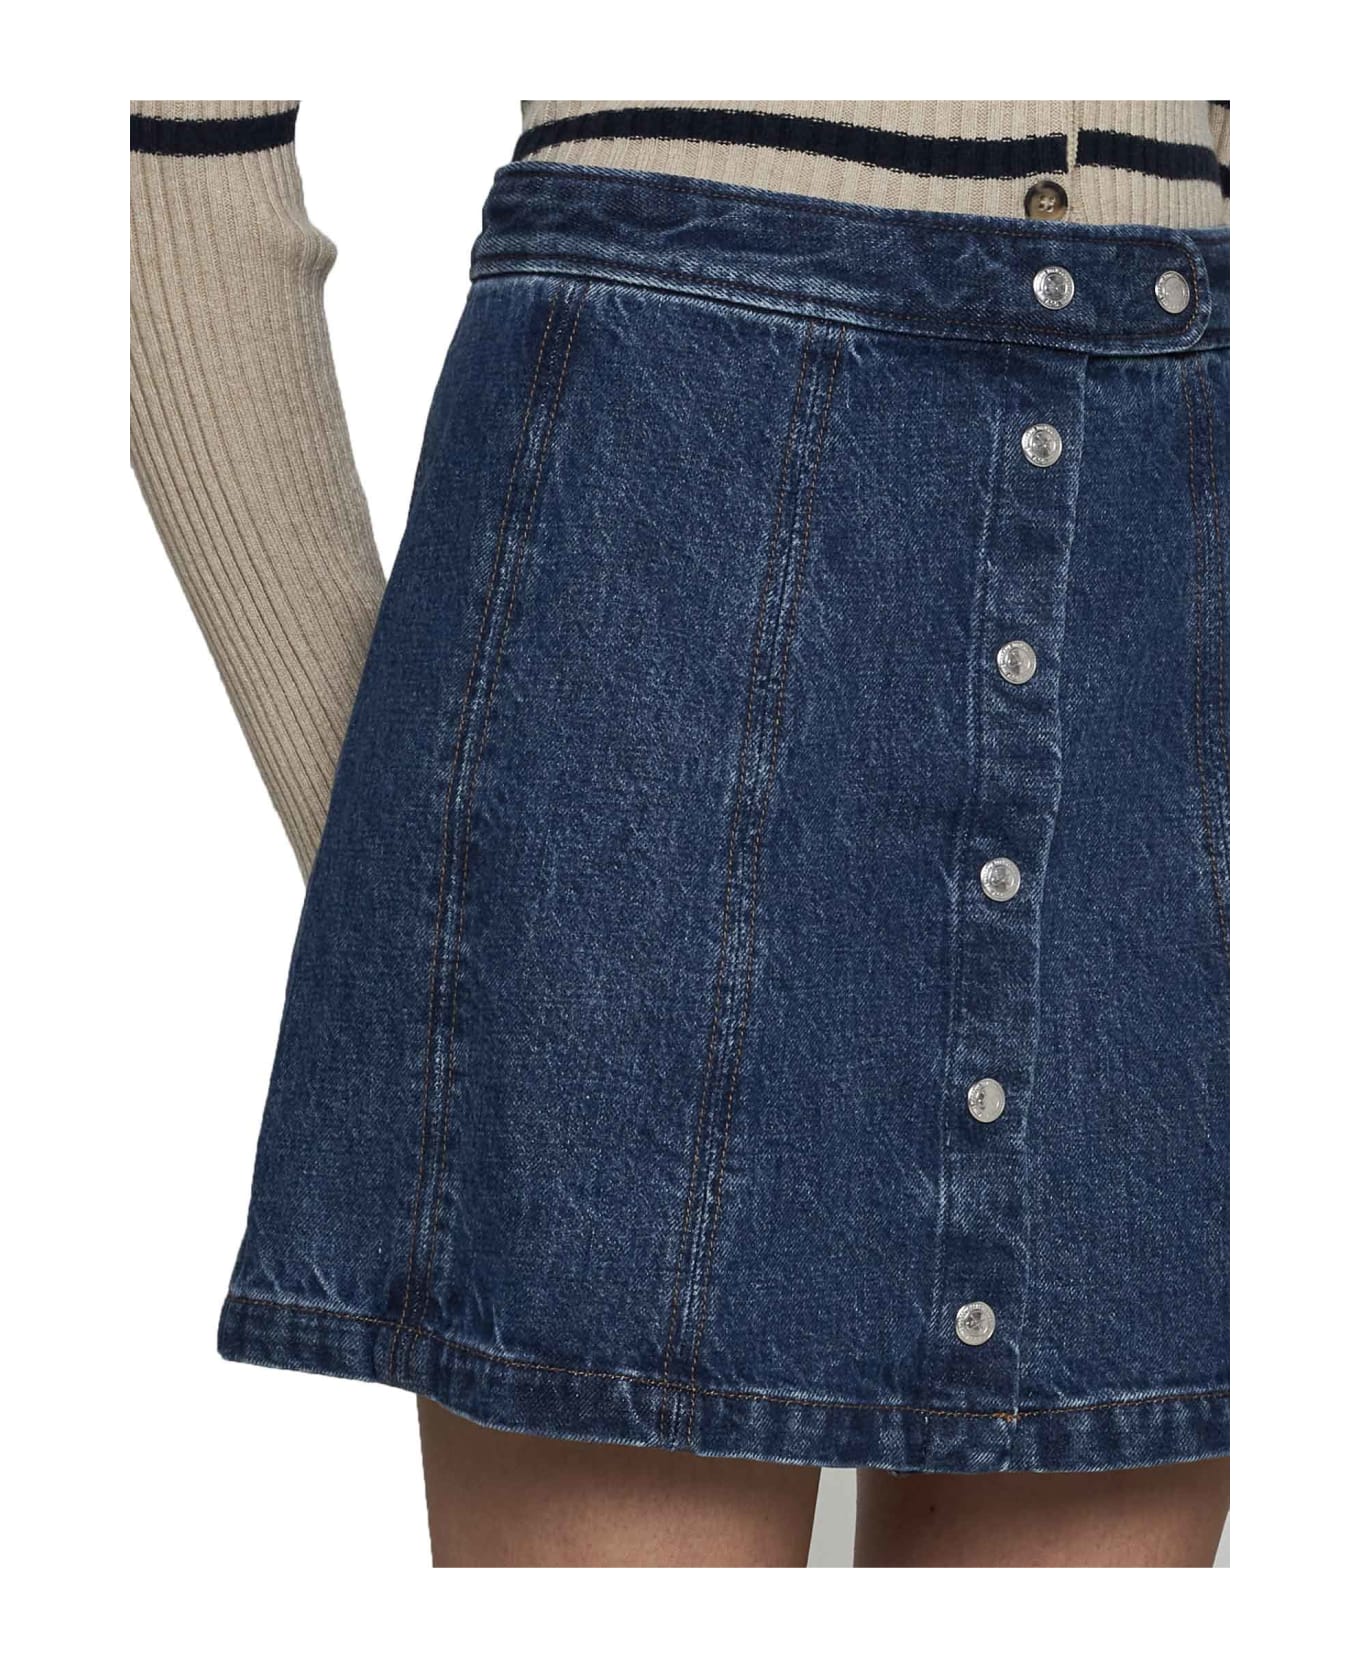 A.P.C. Poppy Denim Miniskirt - Washed indigo